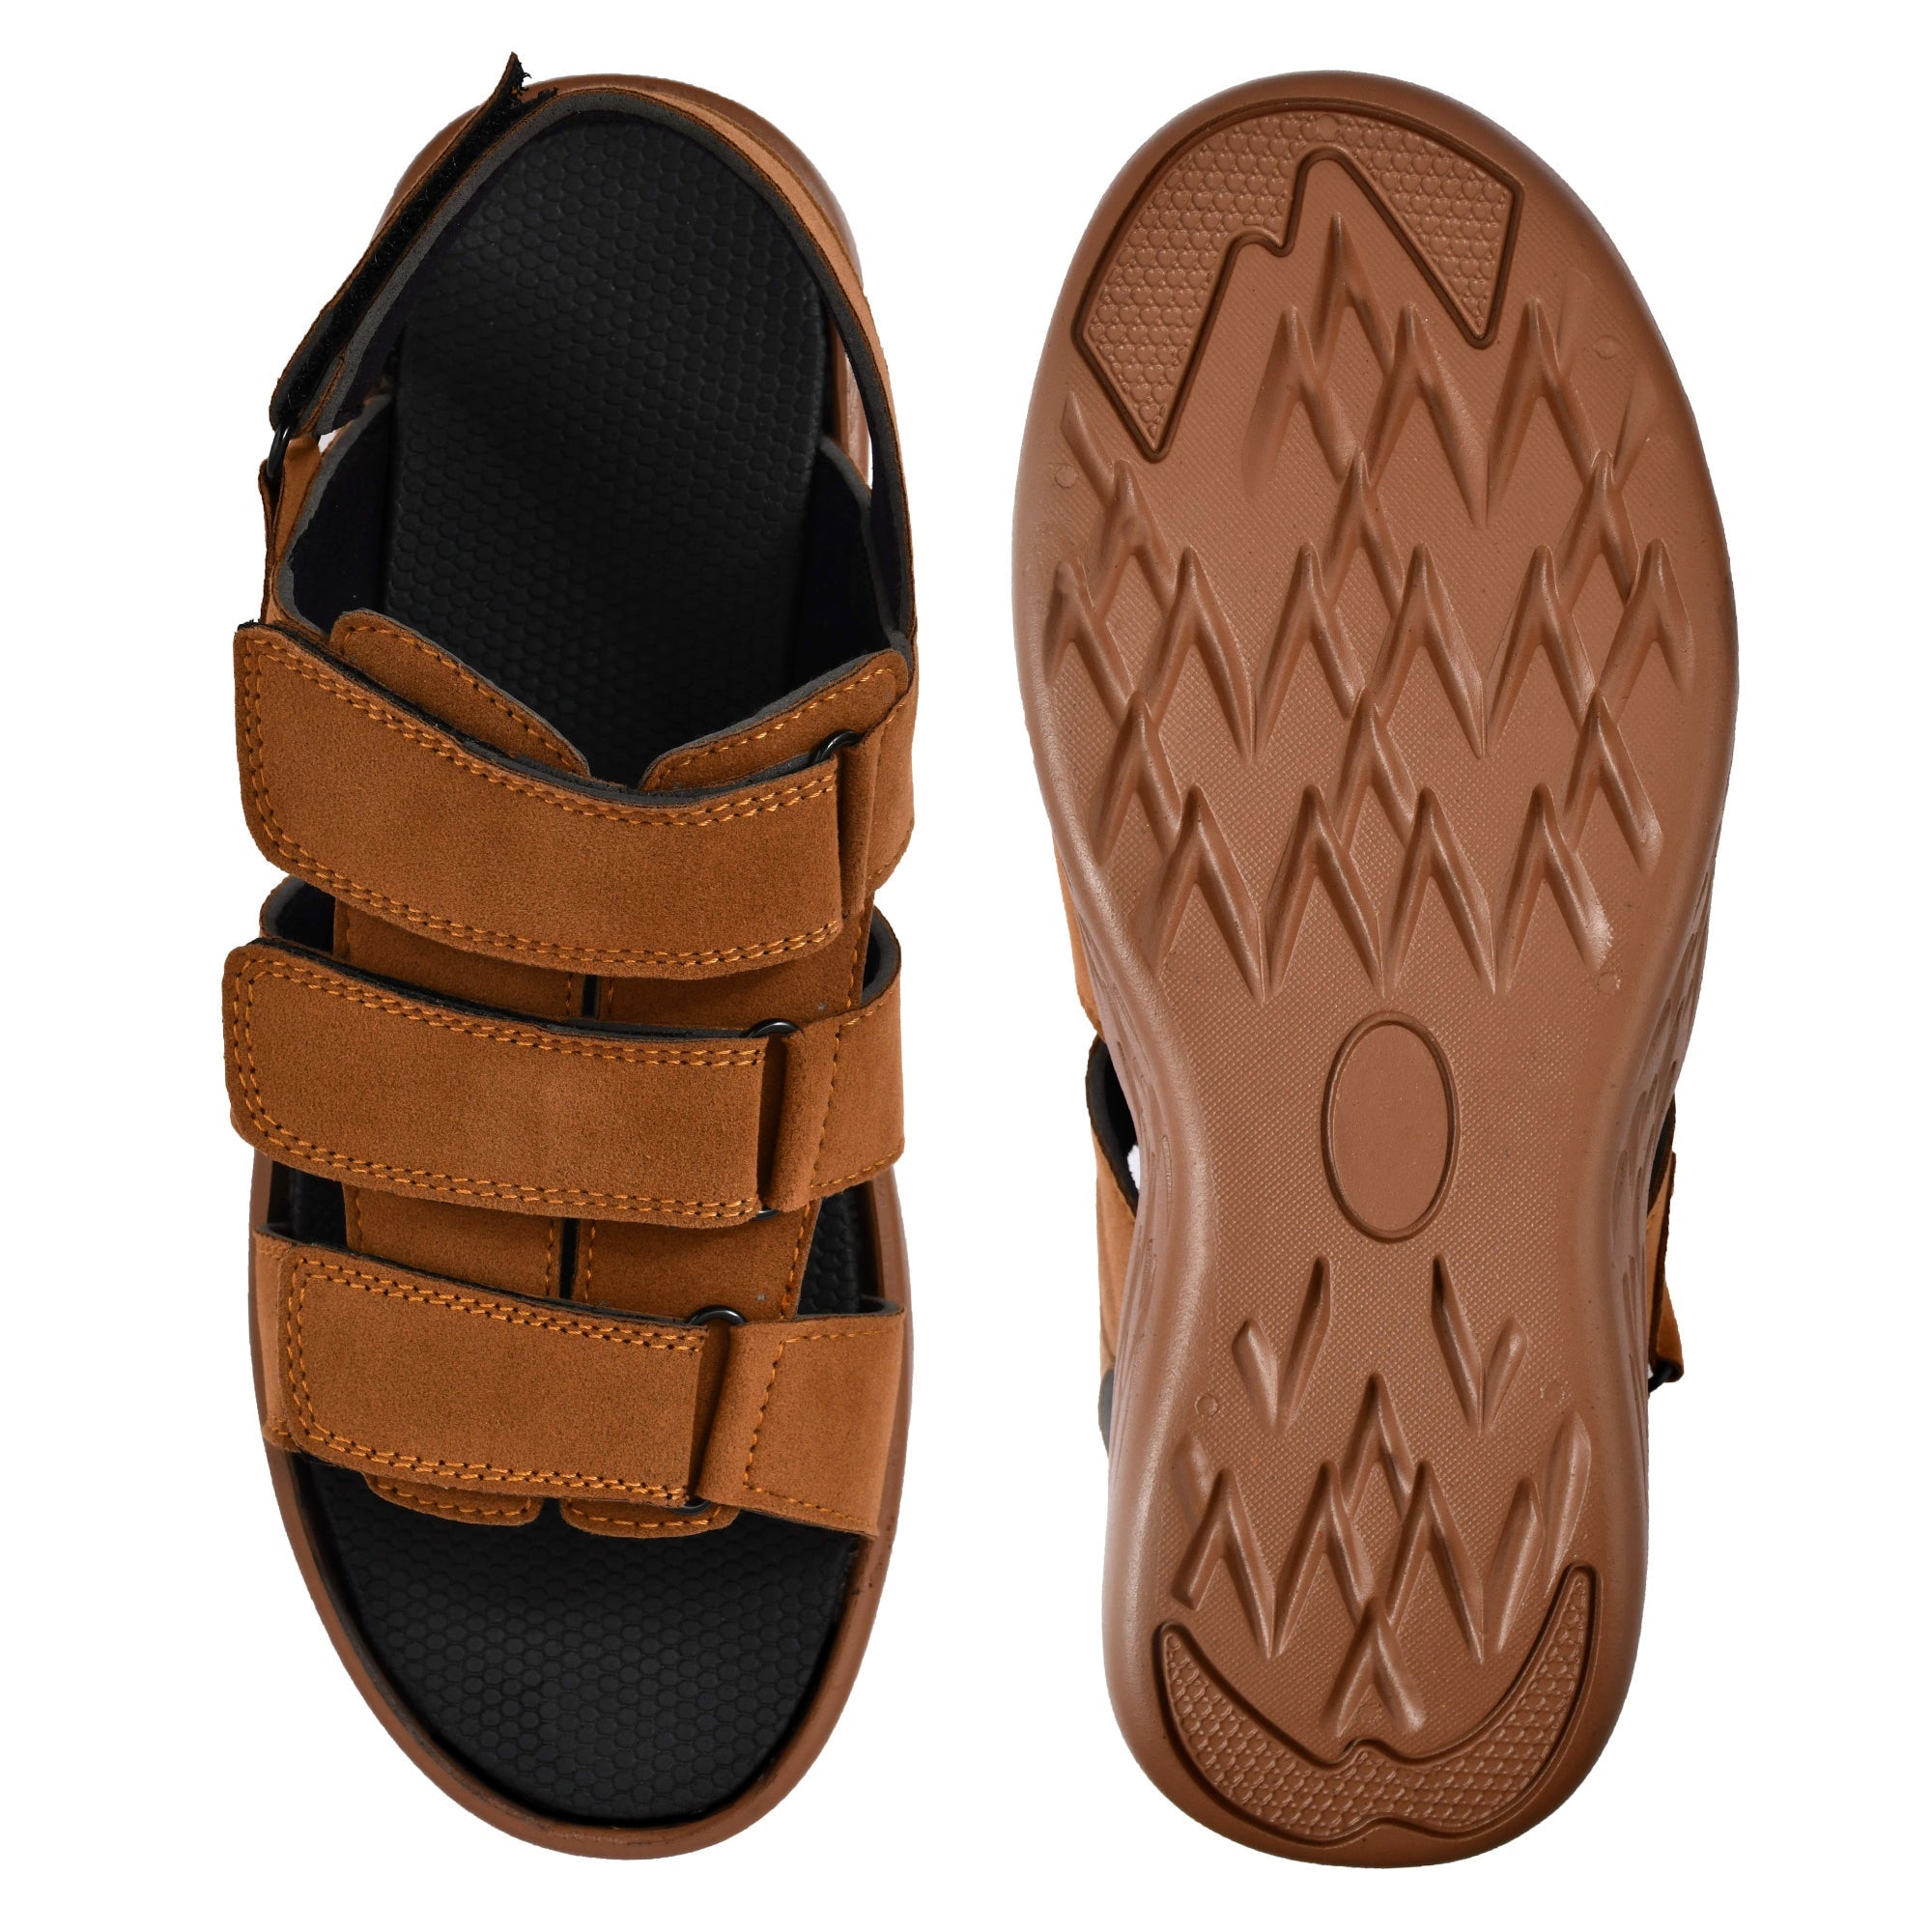 Attitudist Handicrafted Tan Sandal For Men - ATTITUDIST